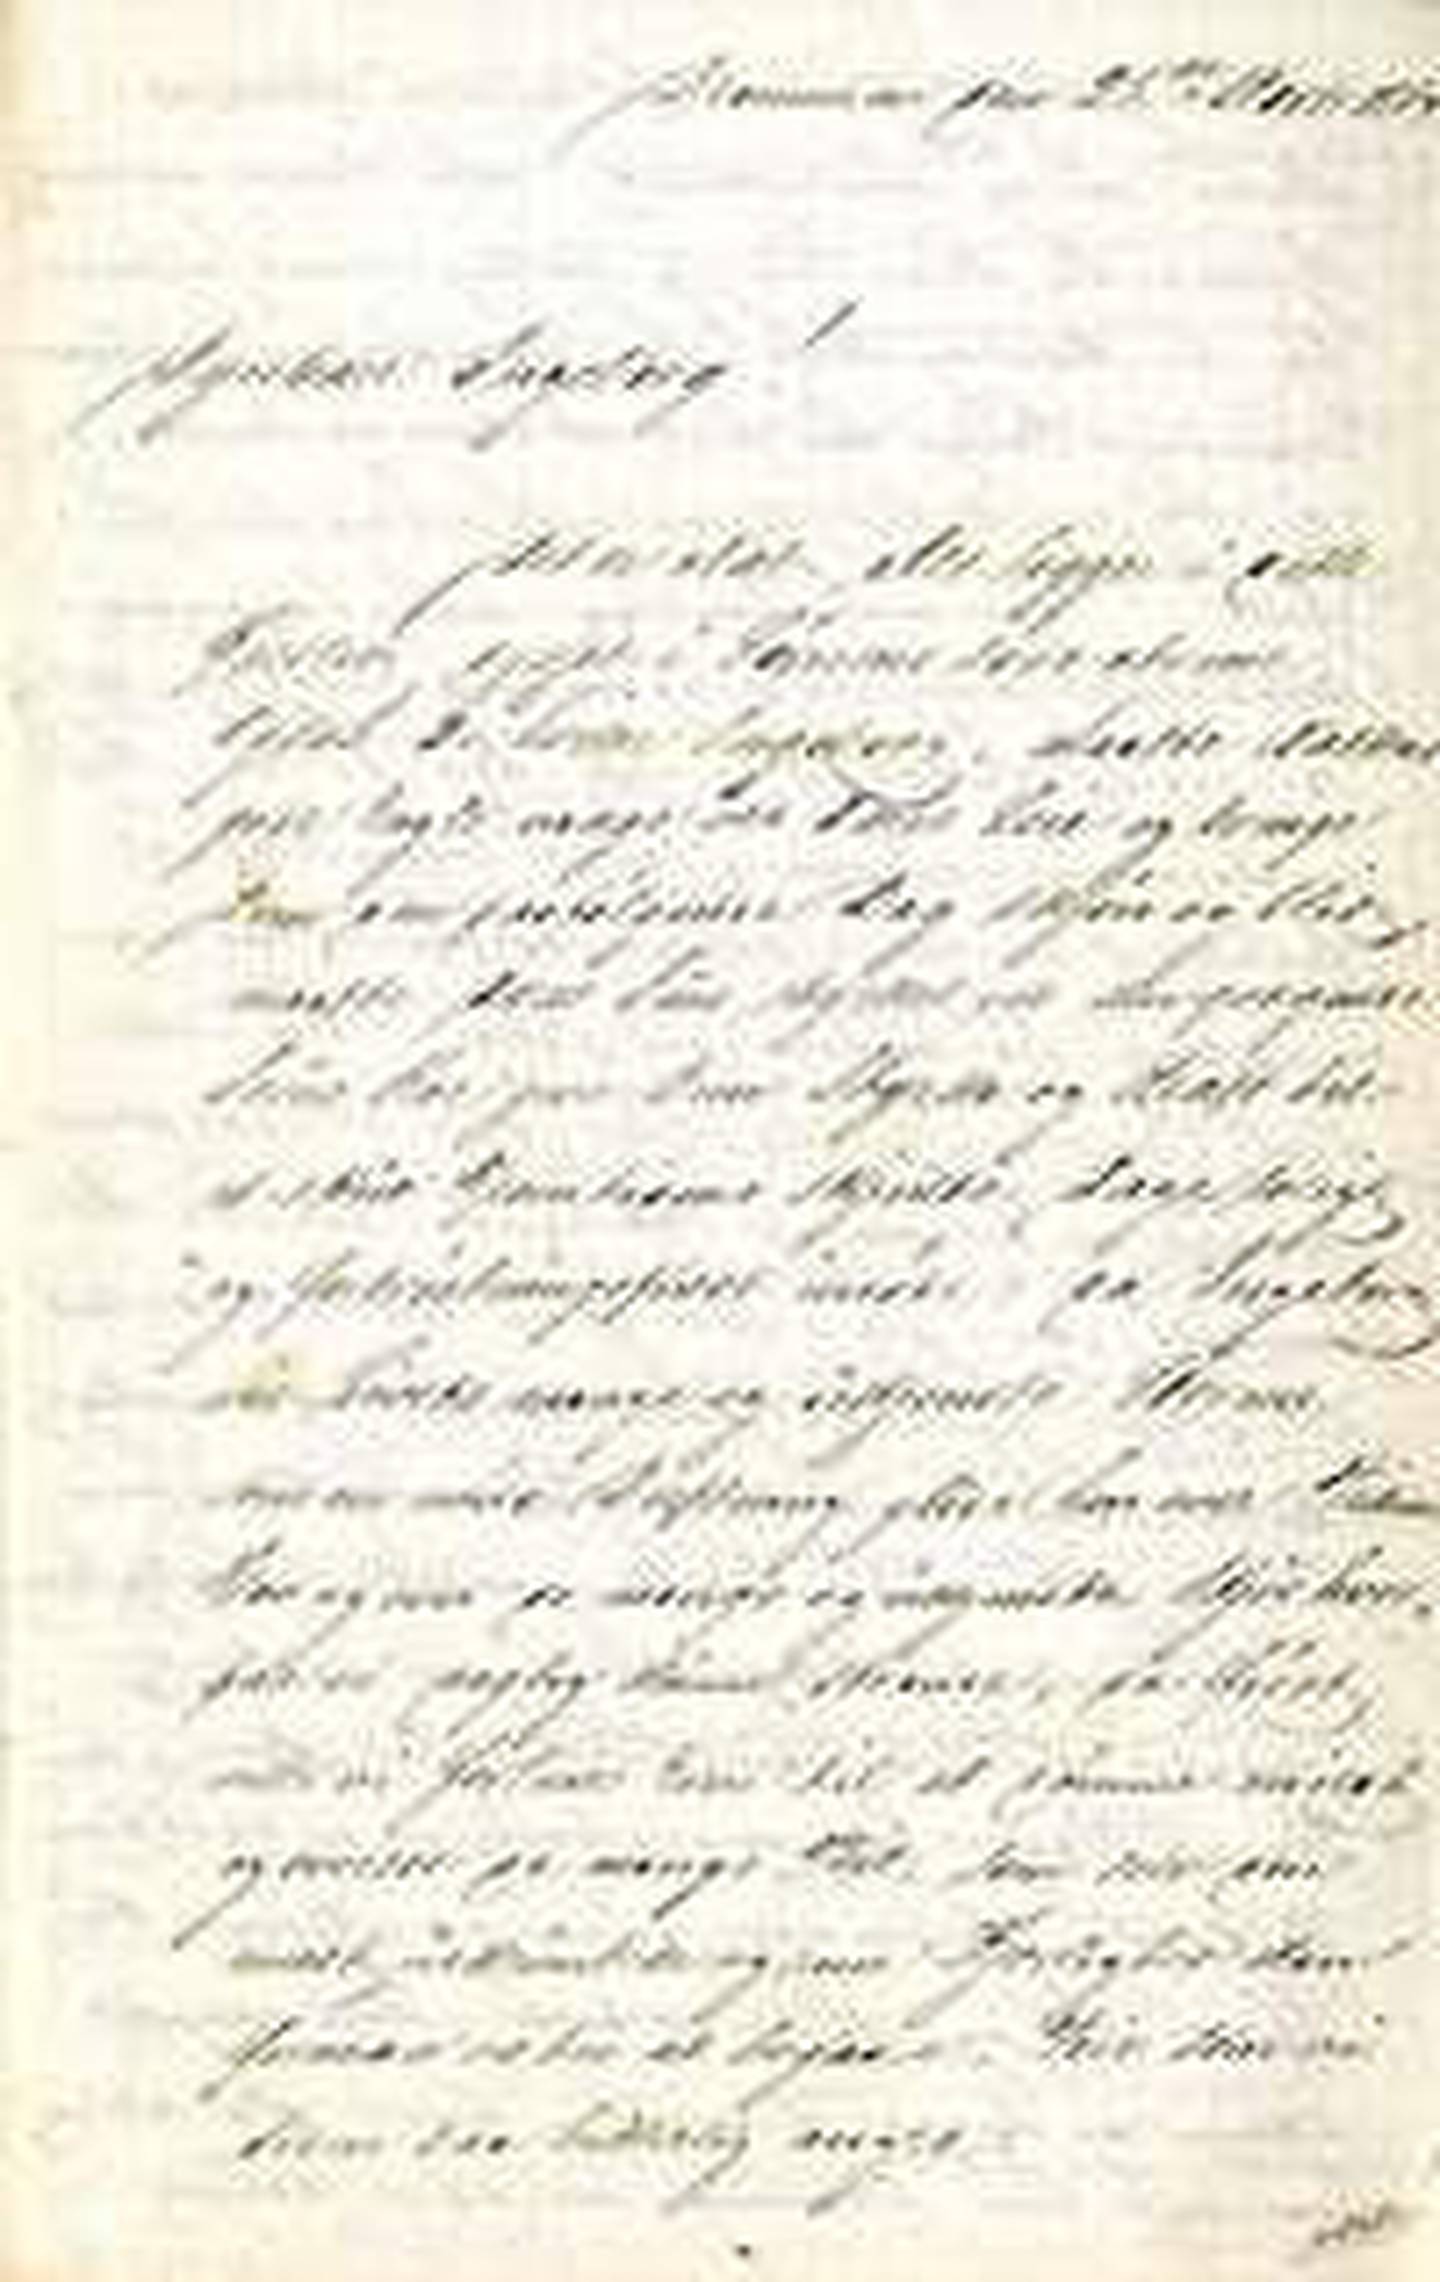 Første brev fra Oluf til Ingeborg er datert 28. november 1864, og her tar Oluf steget fullt ut og erklærer sin kjærlighet til Ingeborg.